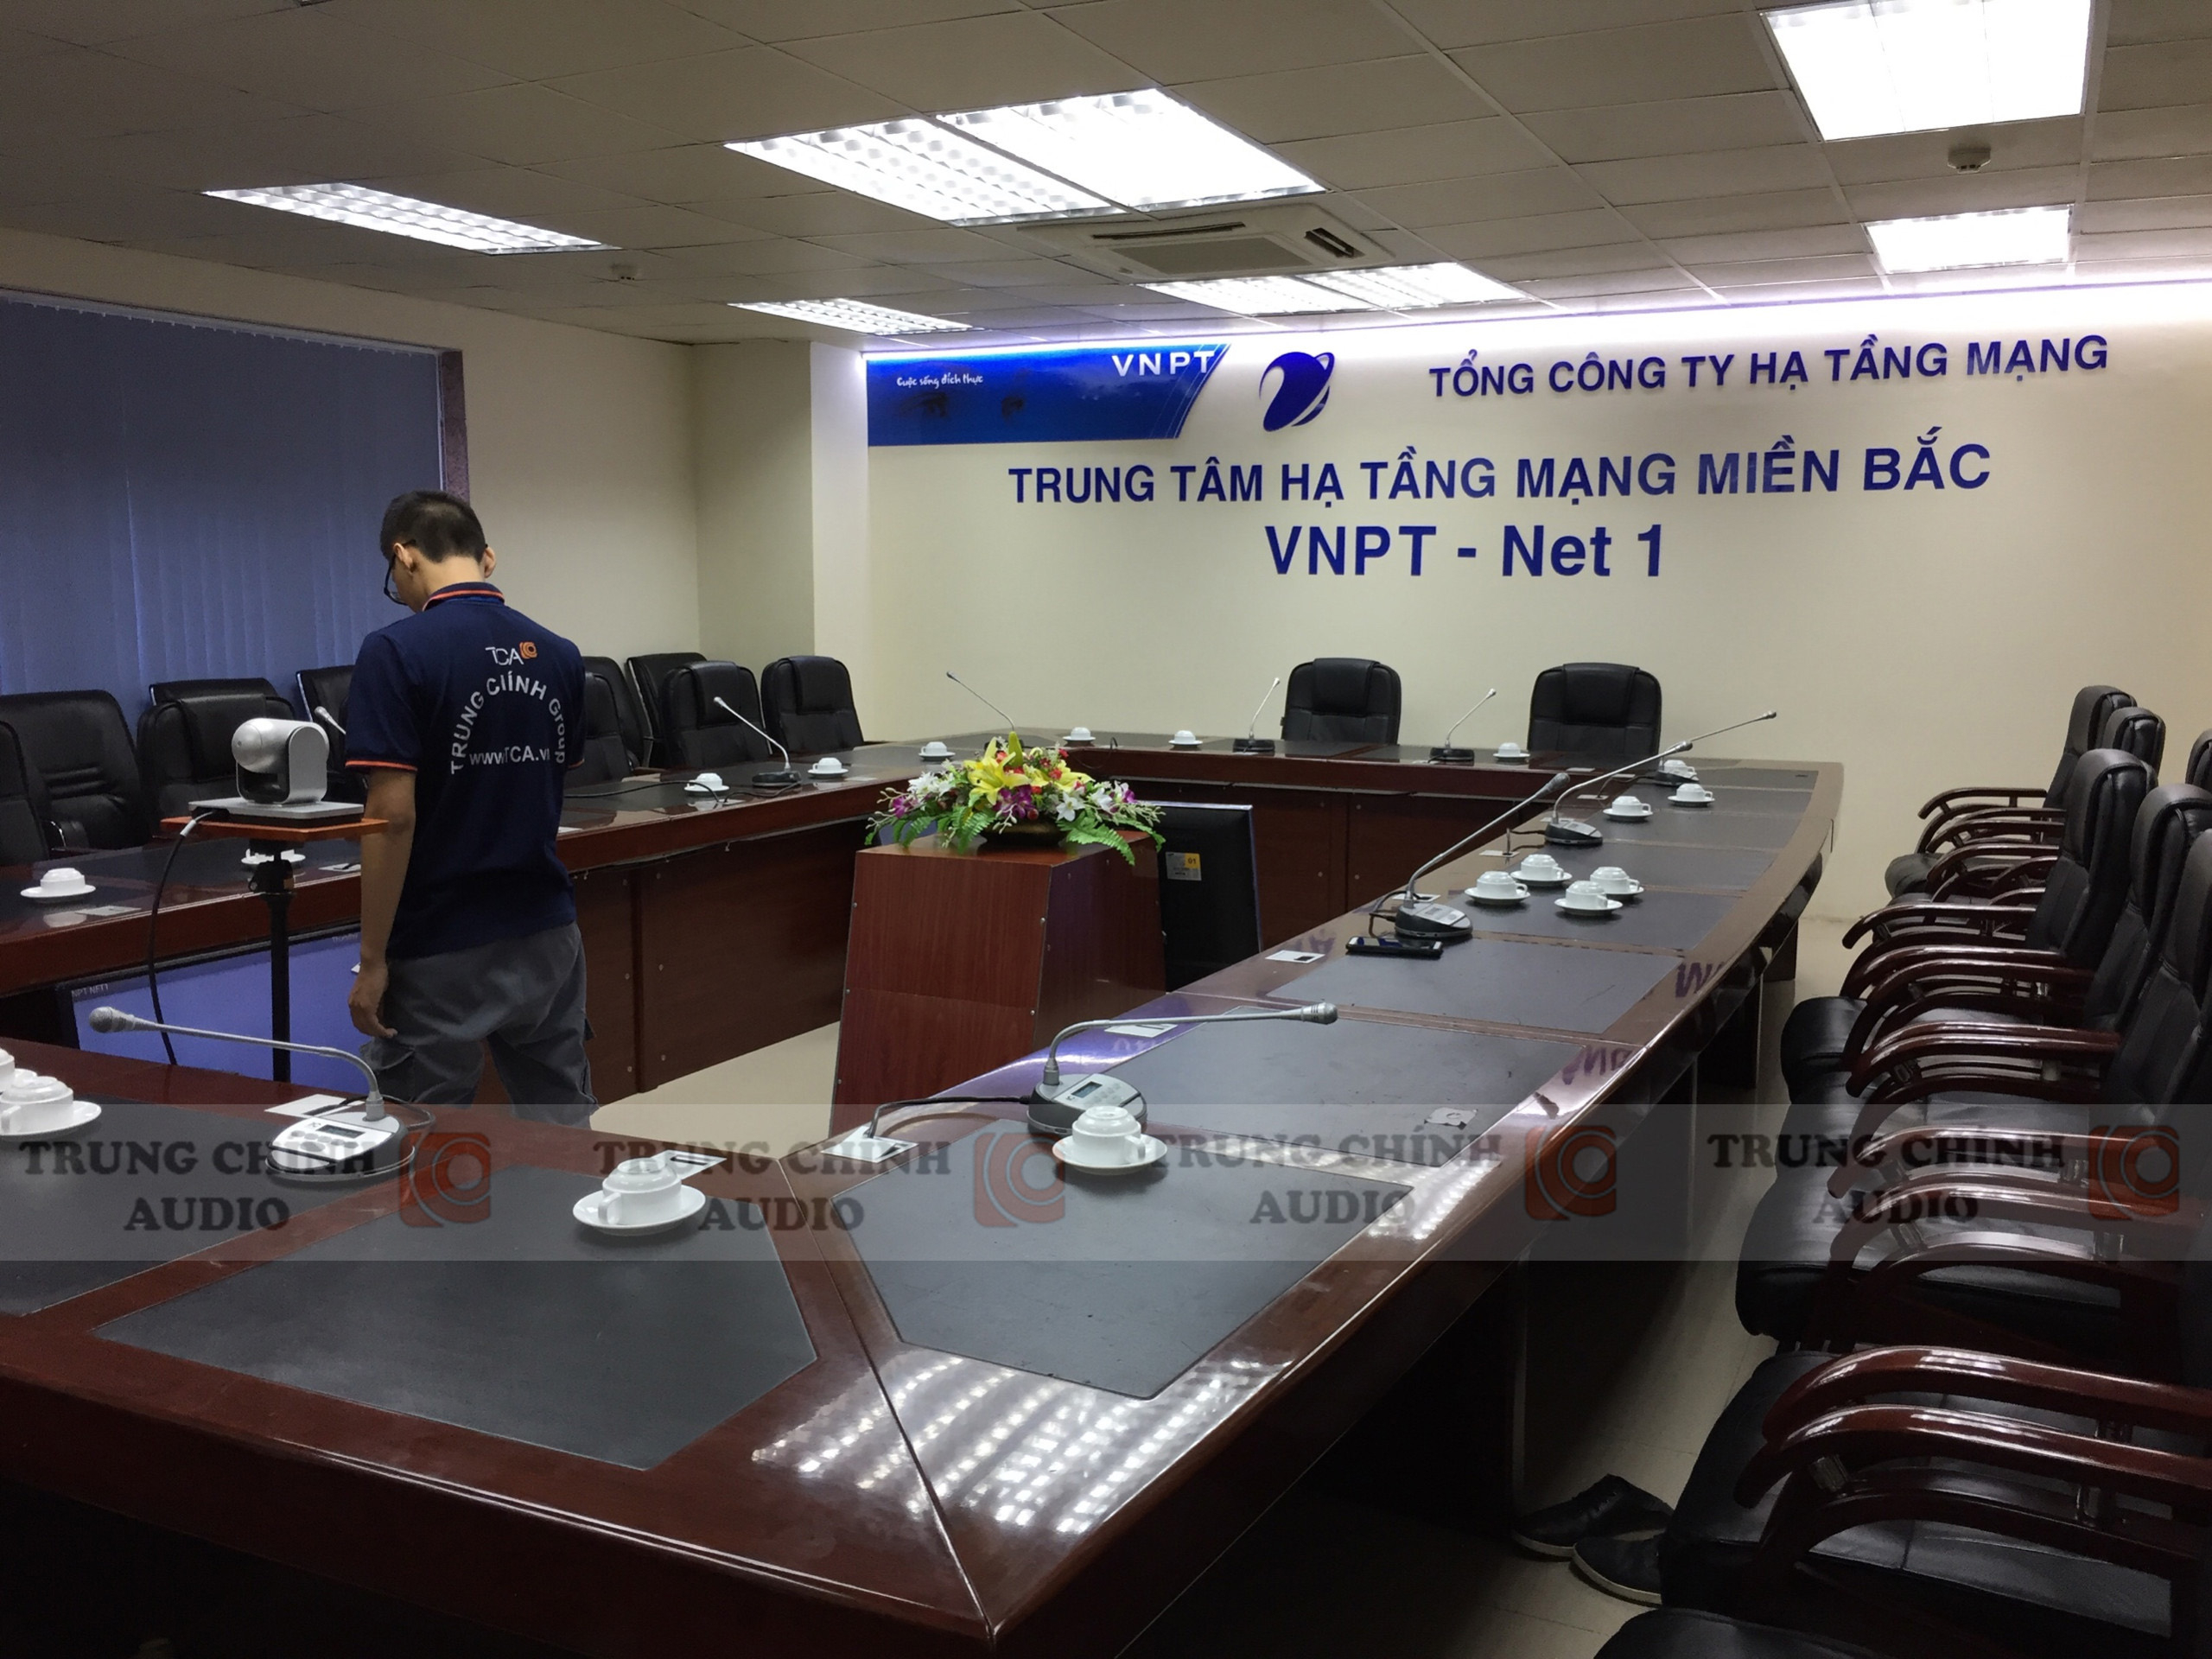 Hệ thống âm thanh hội thảo ITC: VNPT Net 1 - Hạ Tầng Mạng Miền Bắc